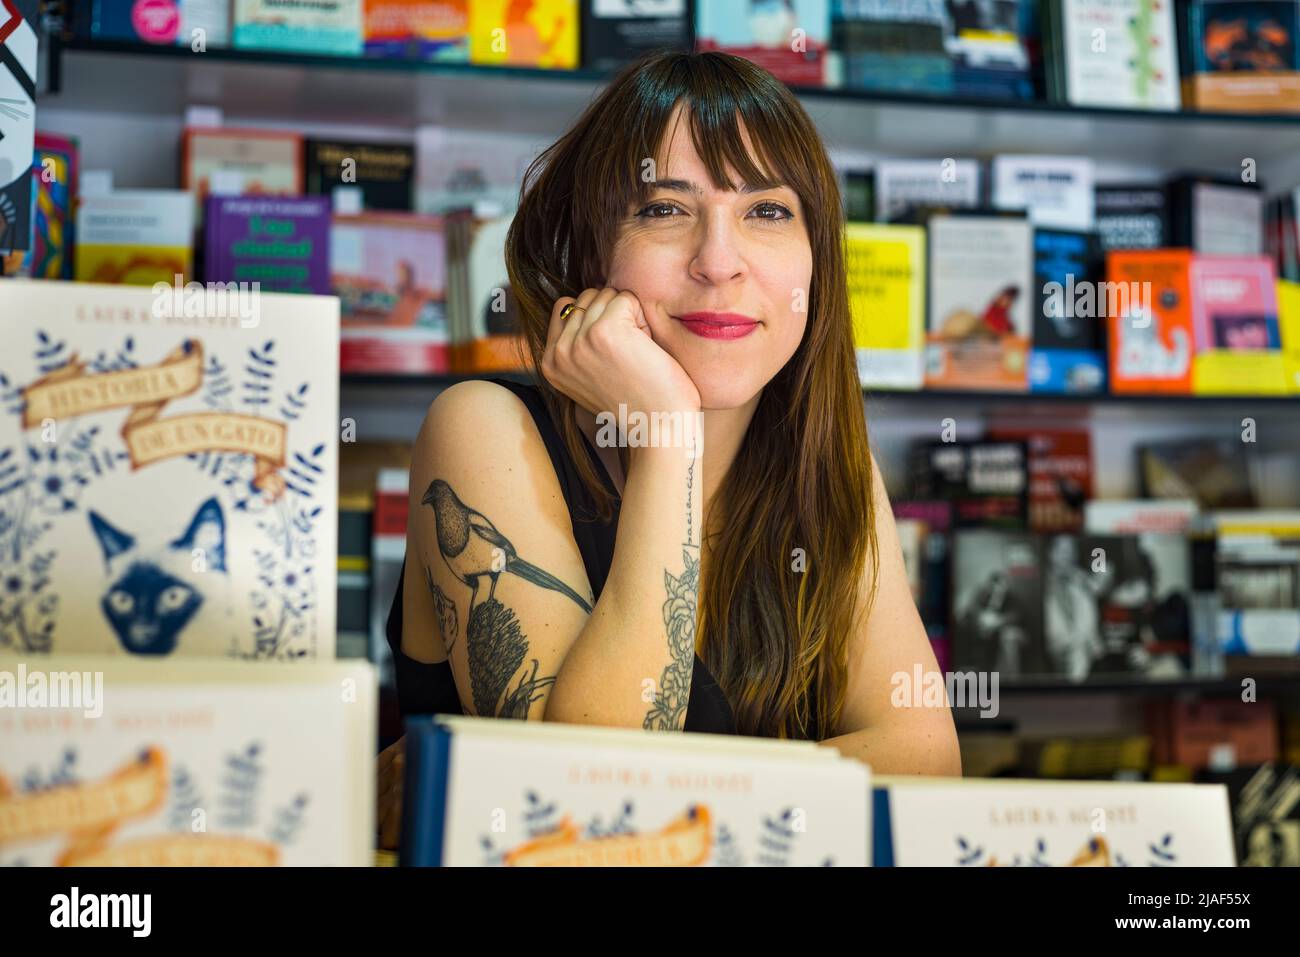 Retrato Mirando a la cámara de la diseñadora e ilustradora española Laura Agusti posando con su libro en la Feria del Libro de Madrid. Foto de stock